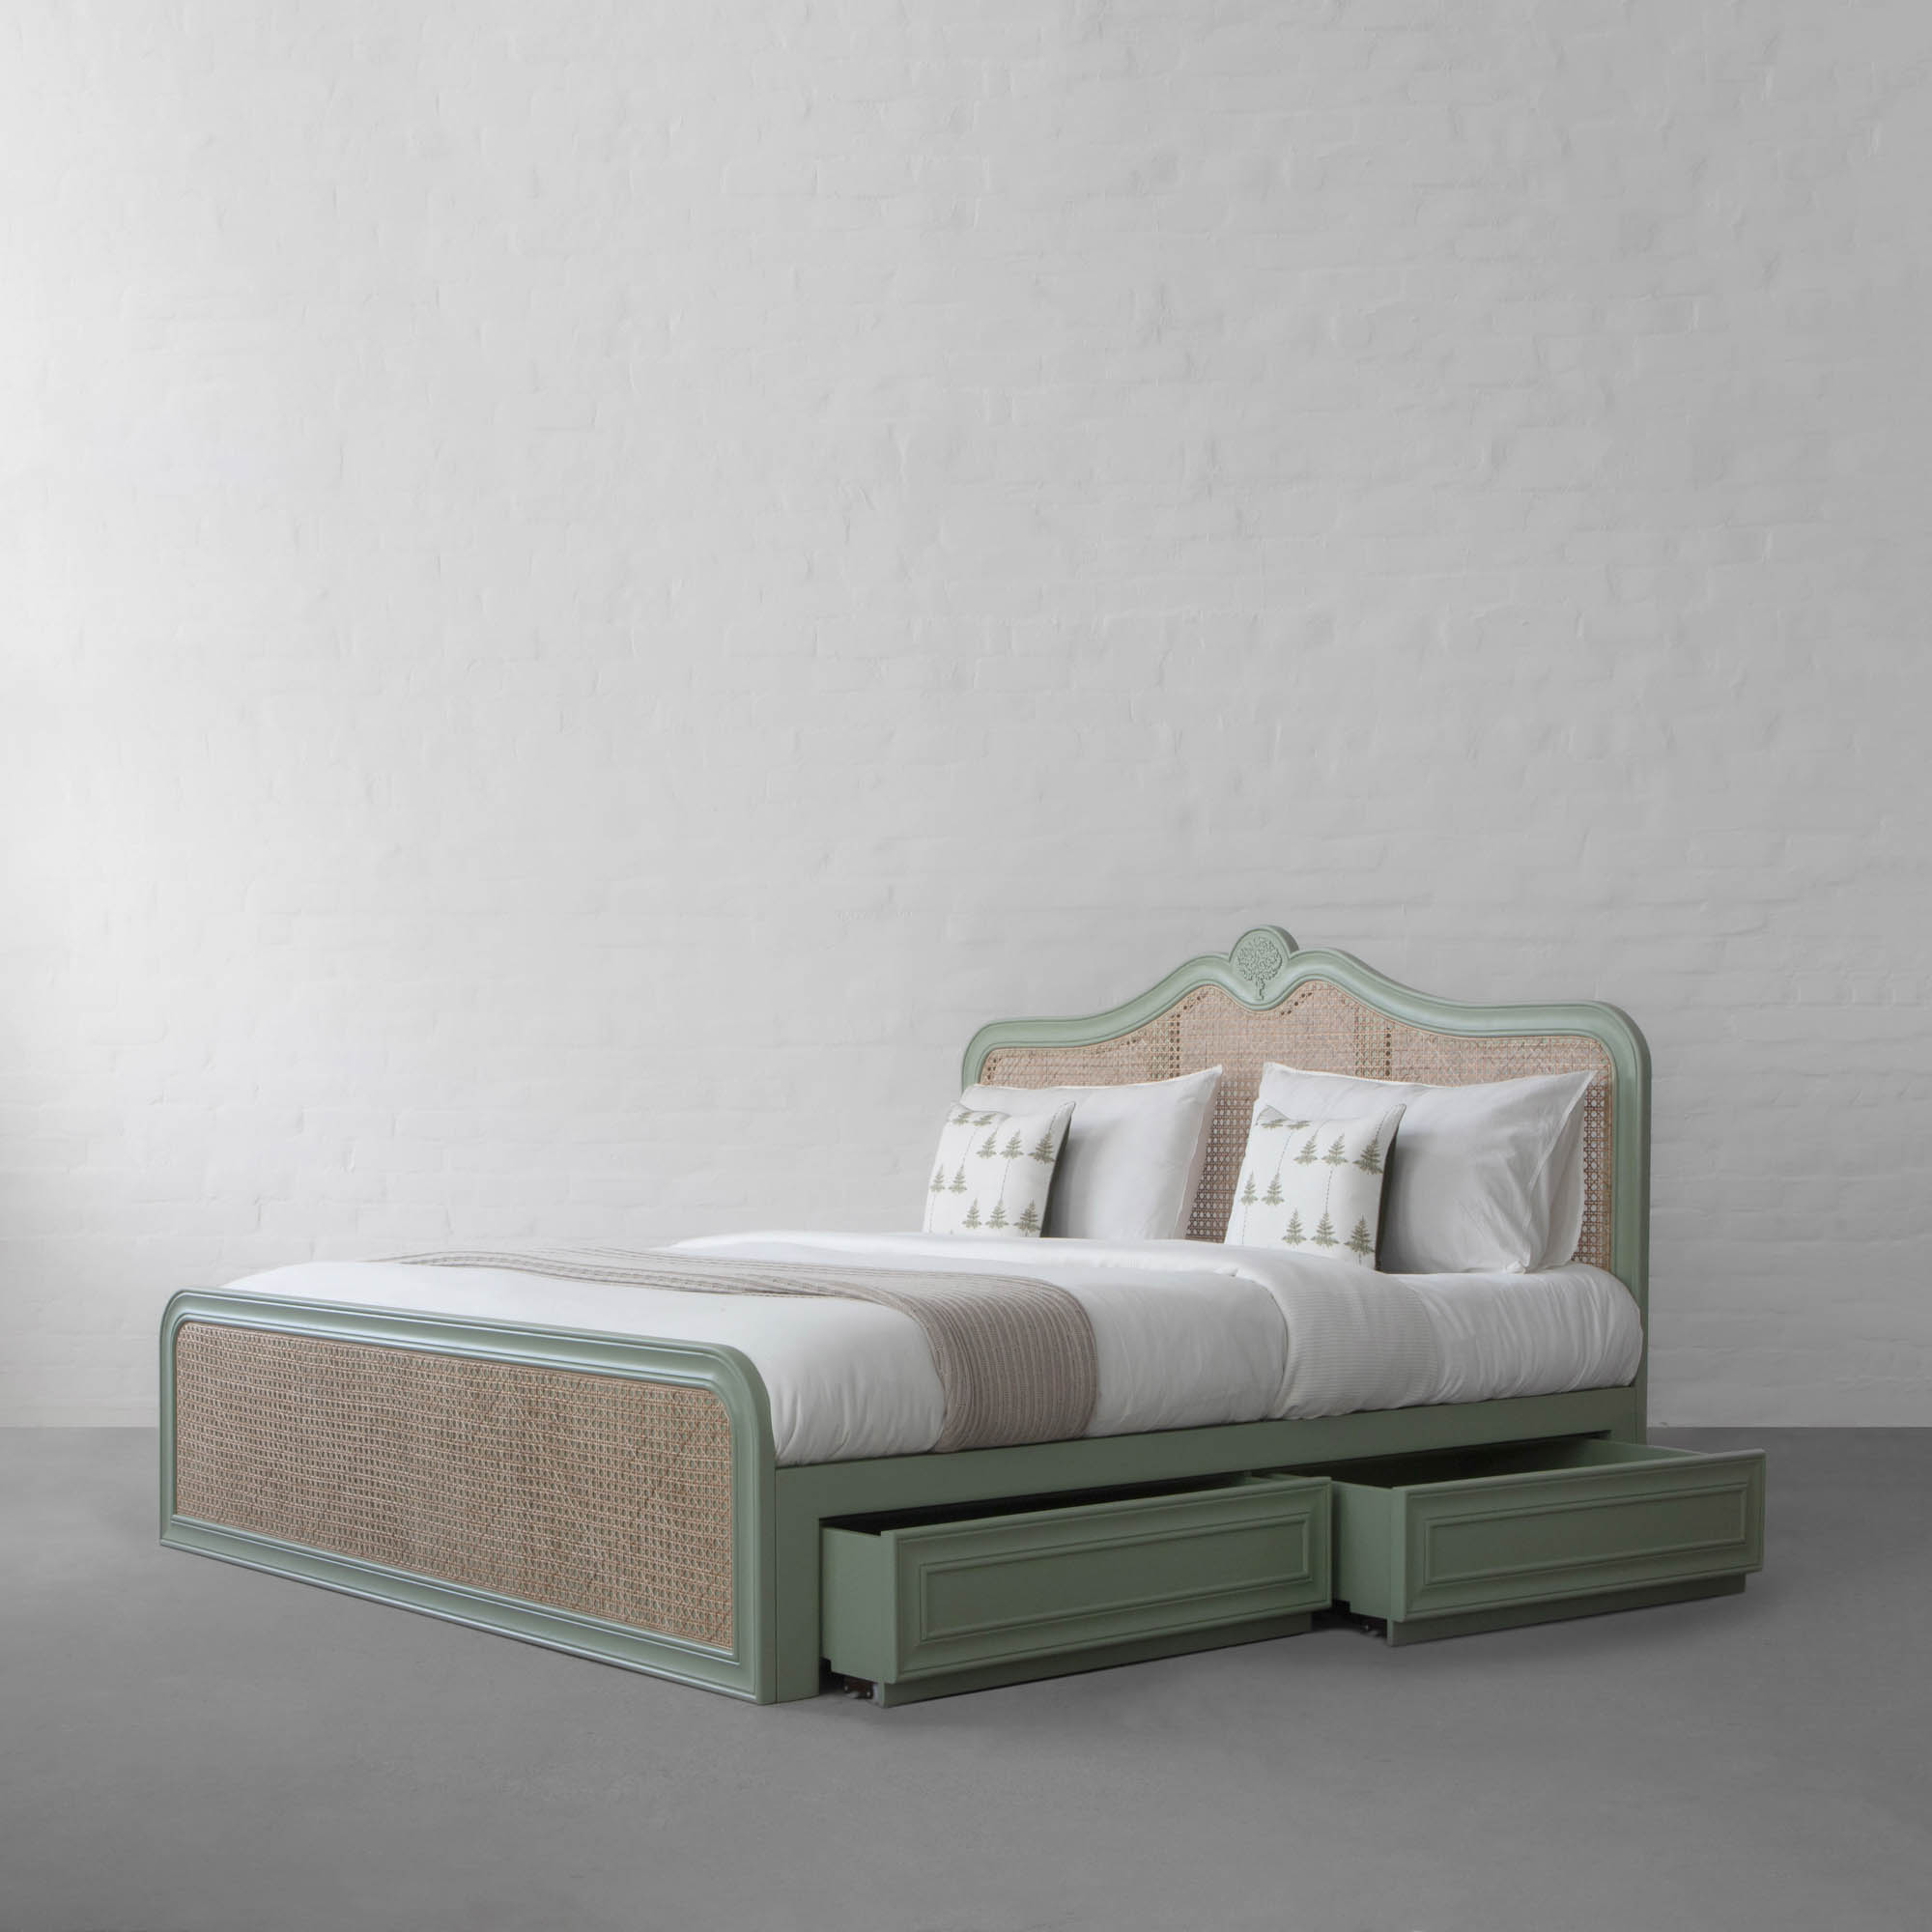 Summer Garden Rattan Bed with Drawer Storage